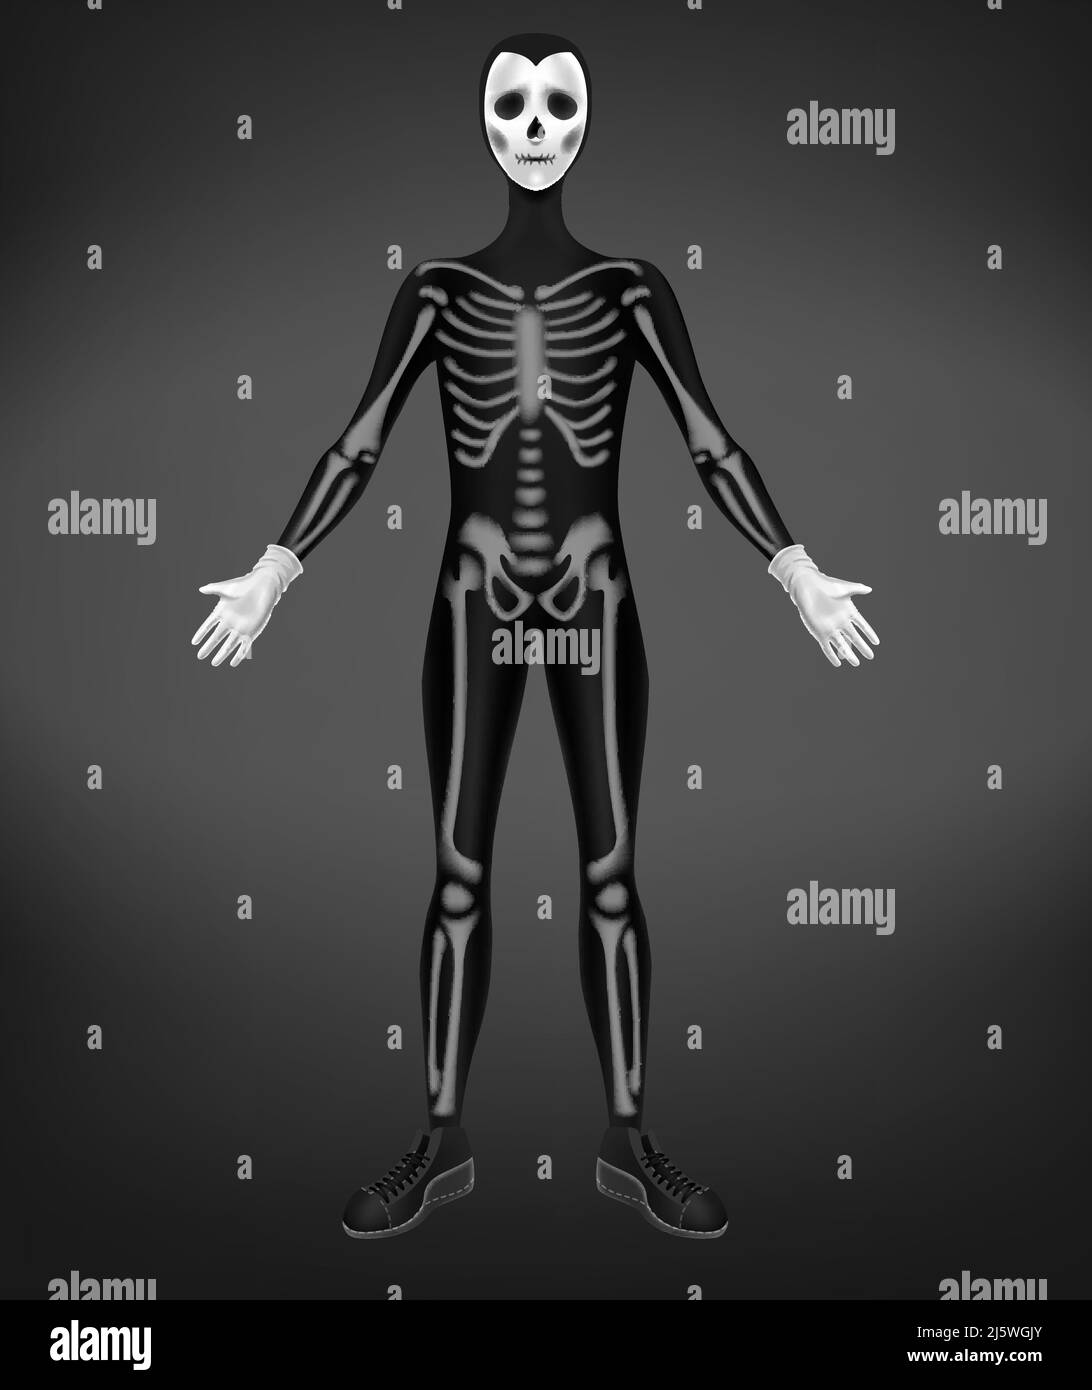 Squelette ou costume de mort pour Halloween partie isolée sur fond noir. Personnage en costume maigre avec os humains, et masque de crâne avec yeux vides Illustration de Vecteur